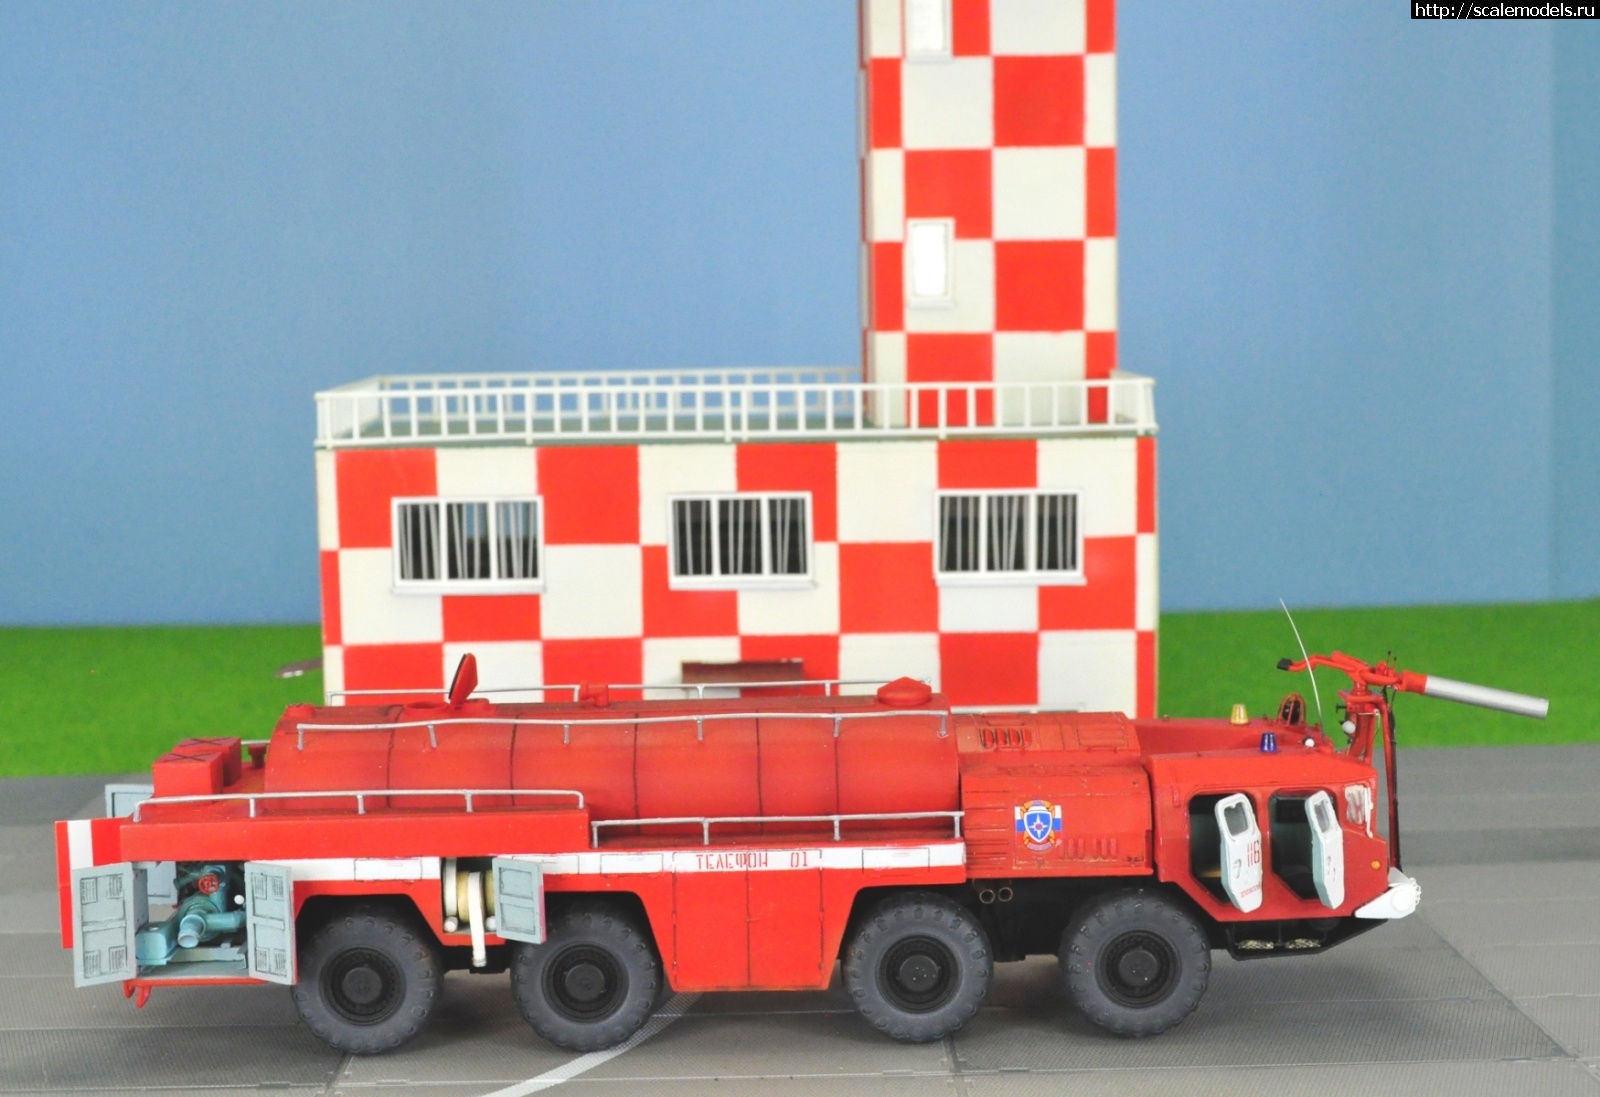 Аэродромный пожарный автомобиль АА-7310-160.01